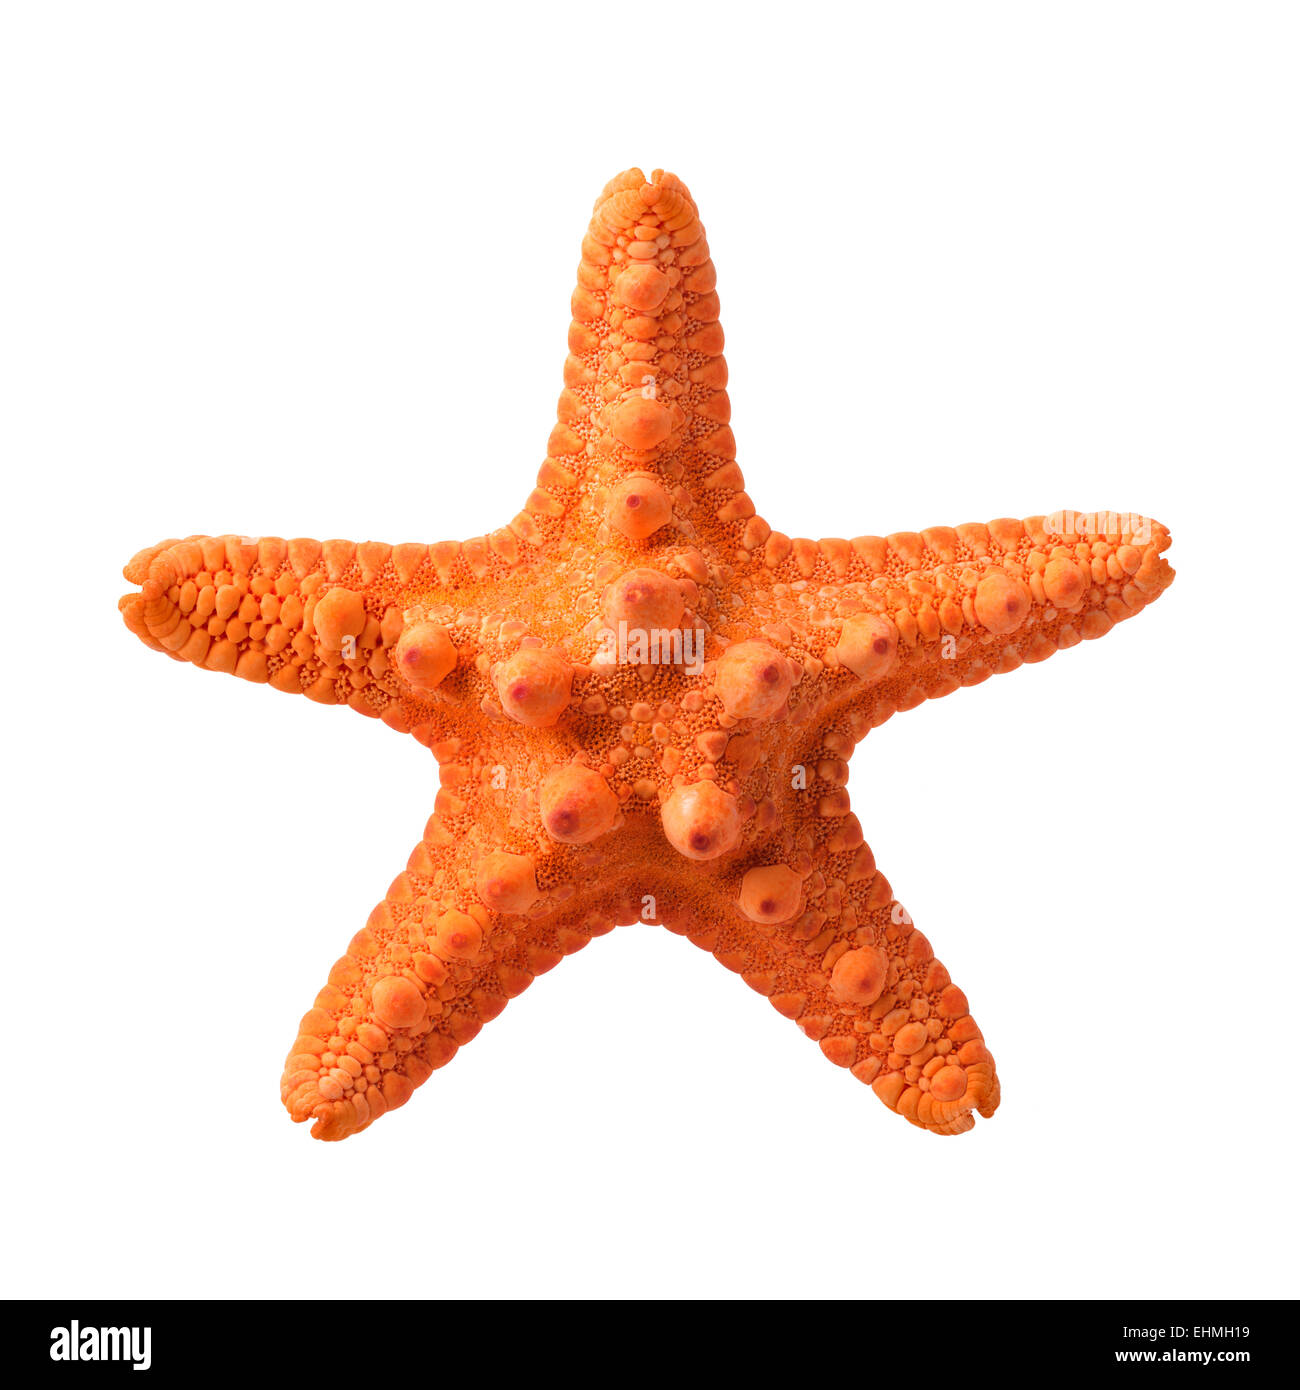 Objets isolés : orange de mer, isolé sur fond blanc, closeup shot Banque D'Images